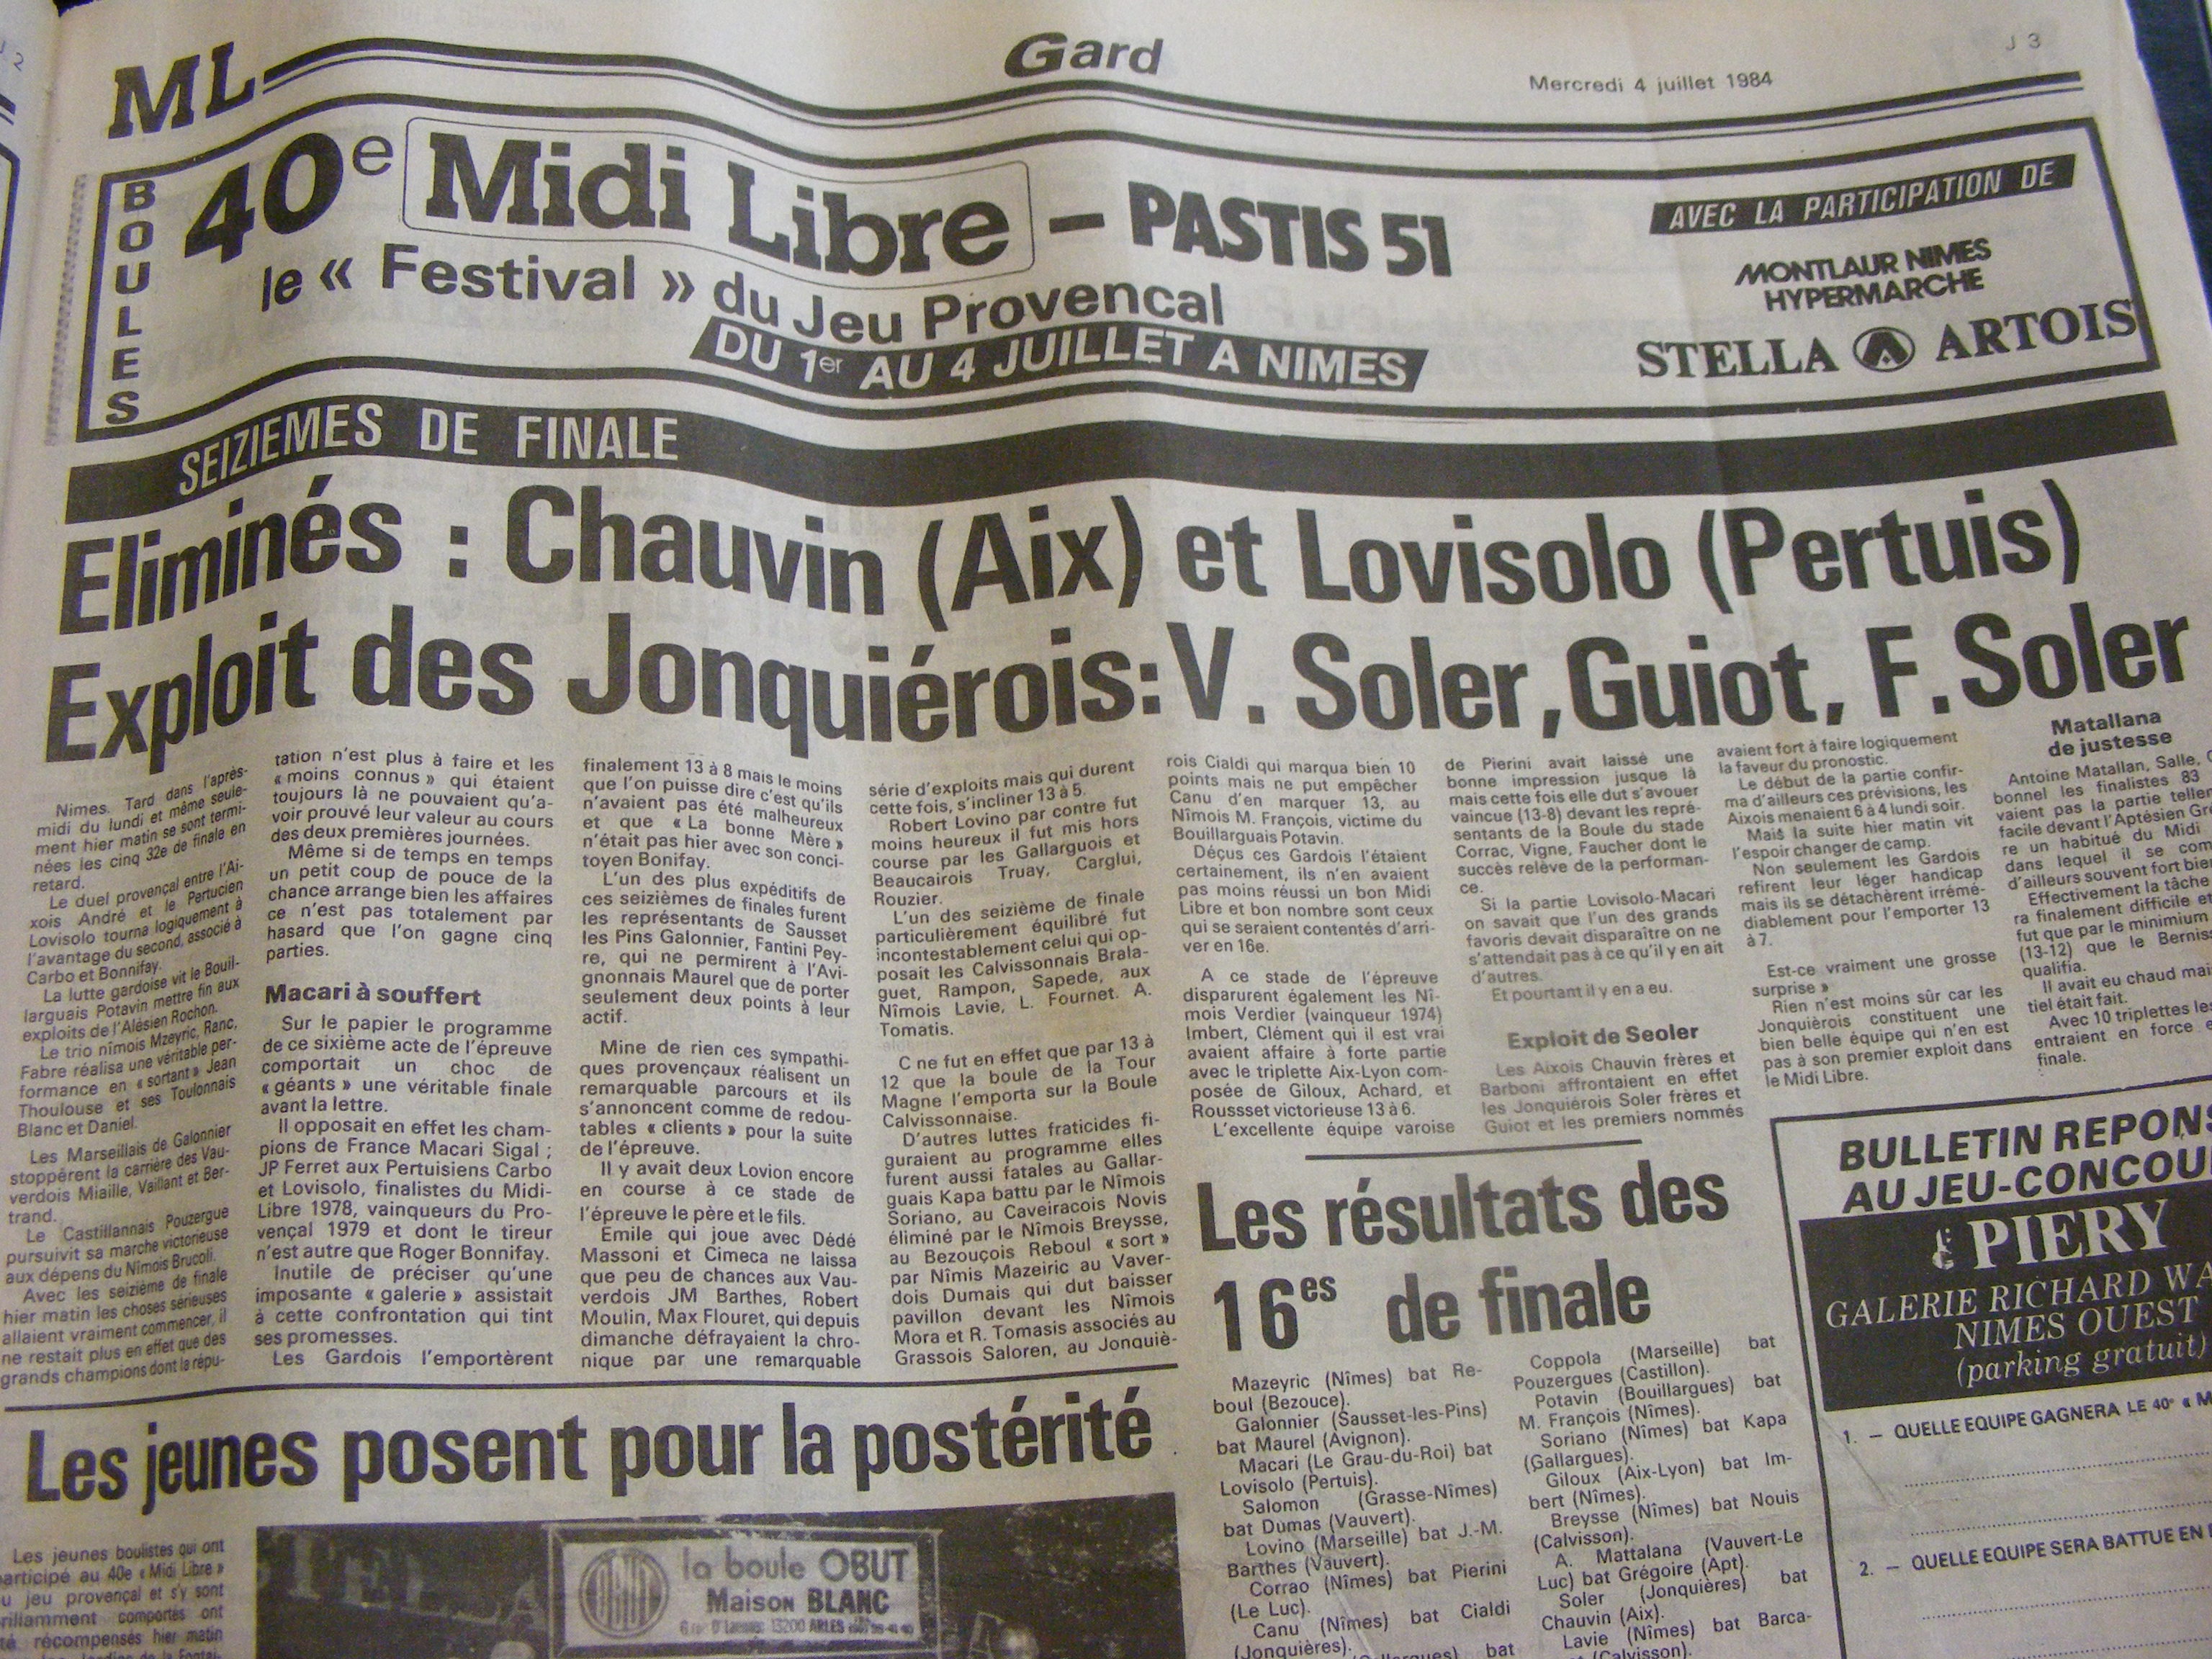 Coupure de Presse Midi Libre 1984  tirée de mes archives !